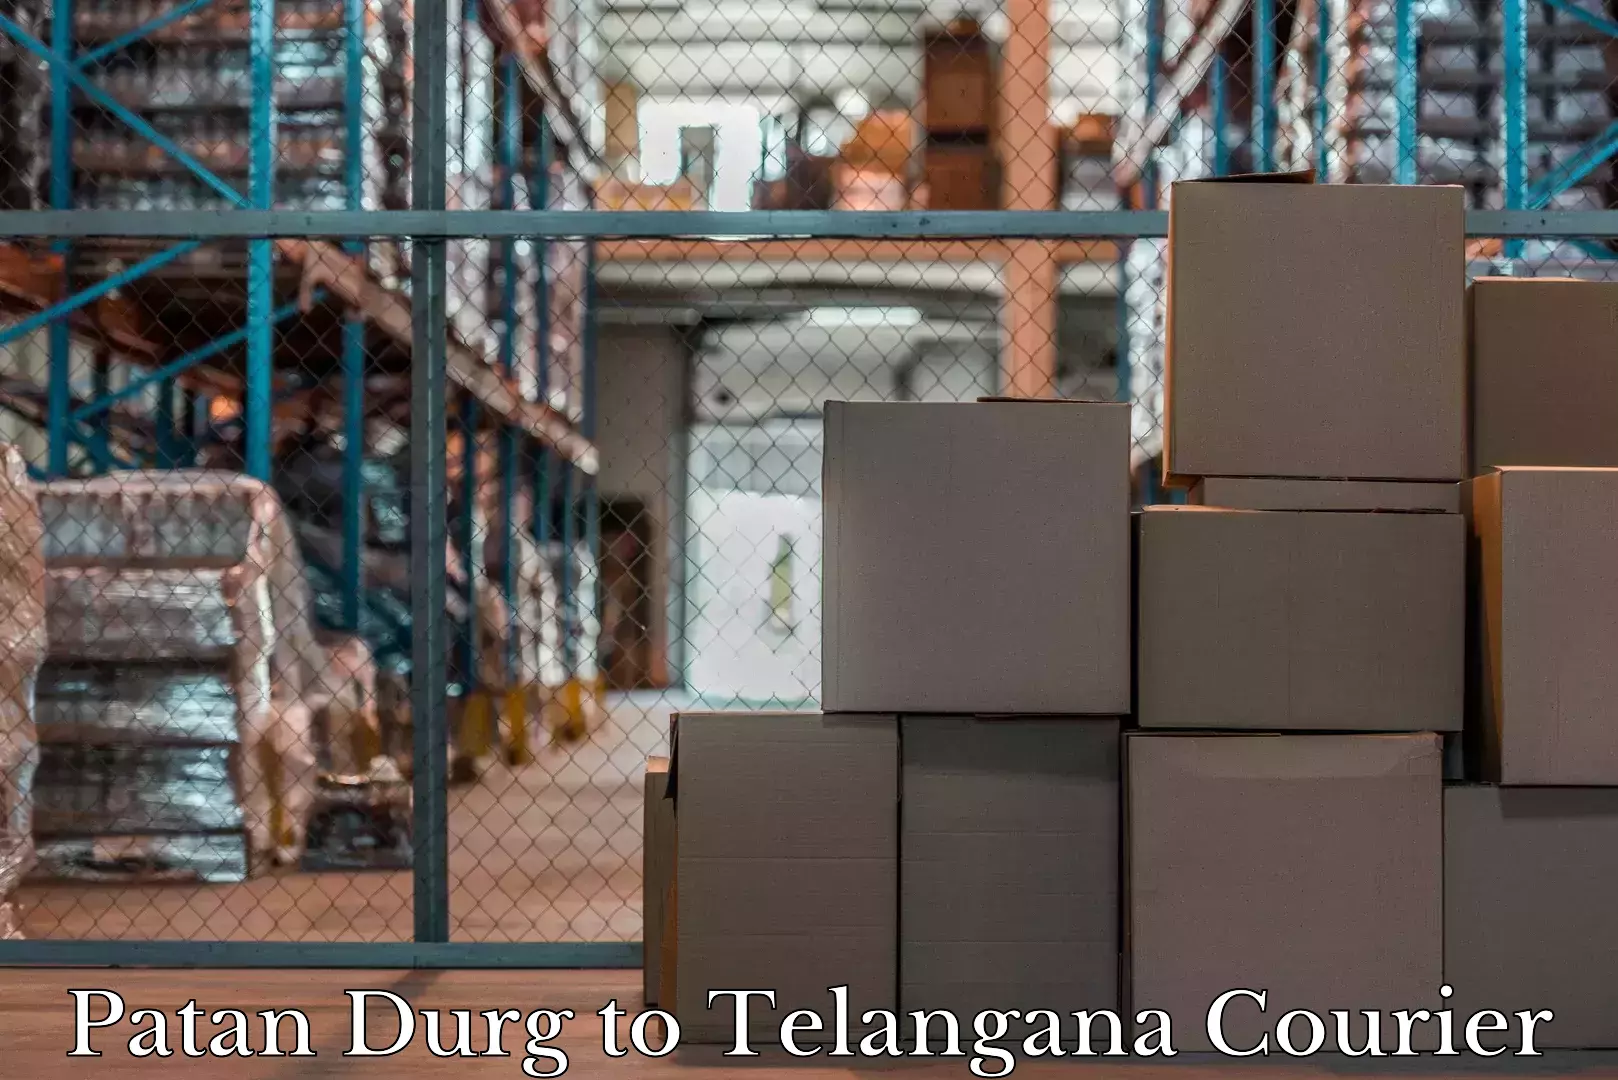 Baggage handling services Patan Durg to Telangana